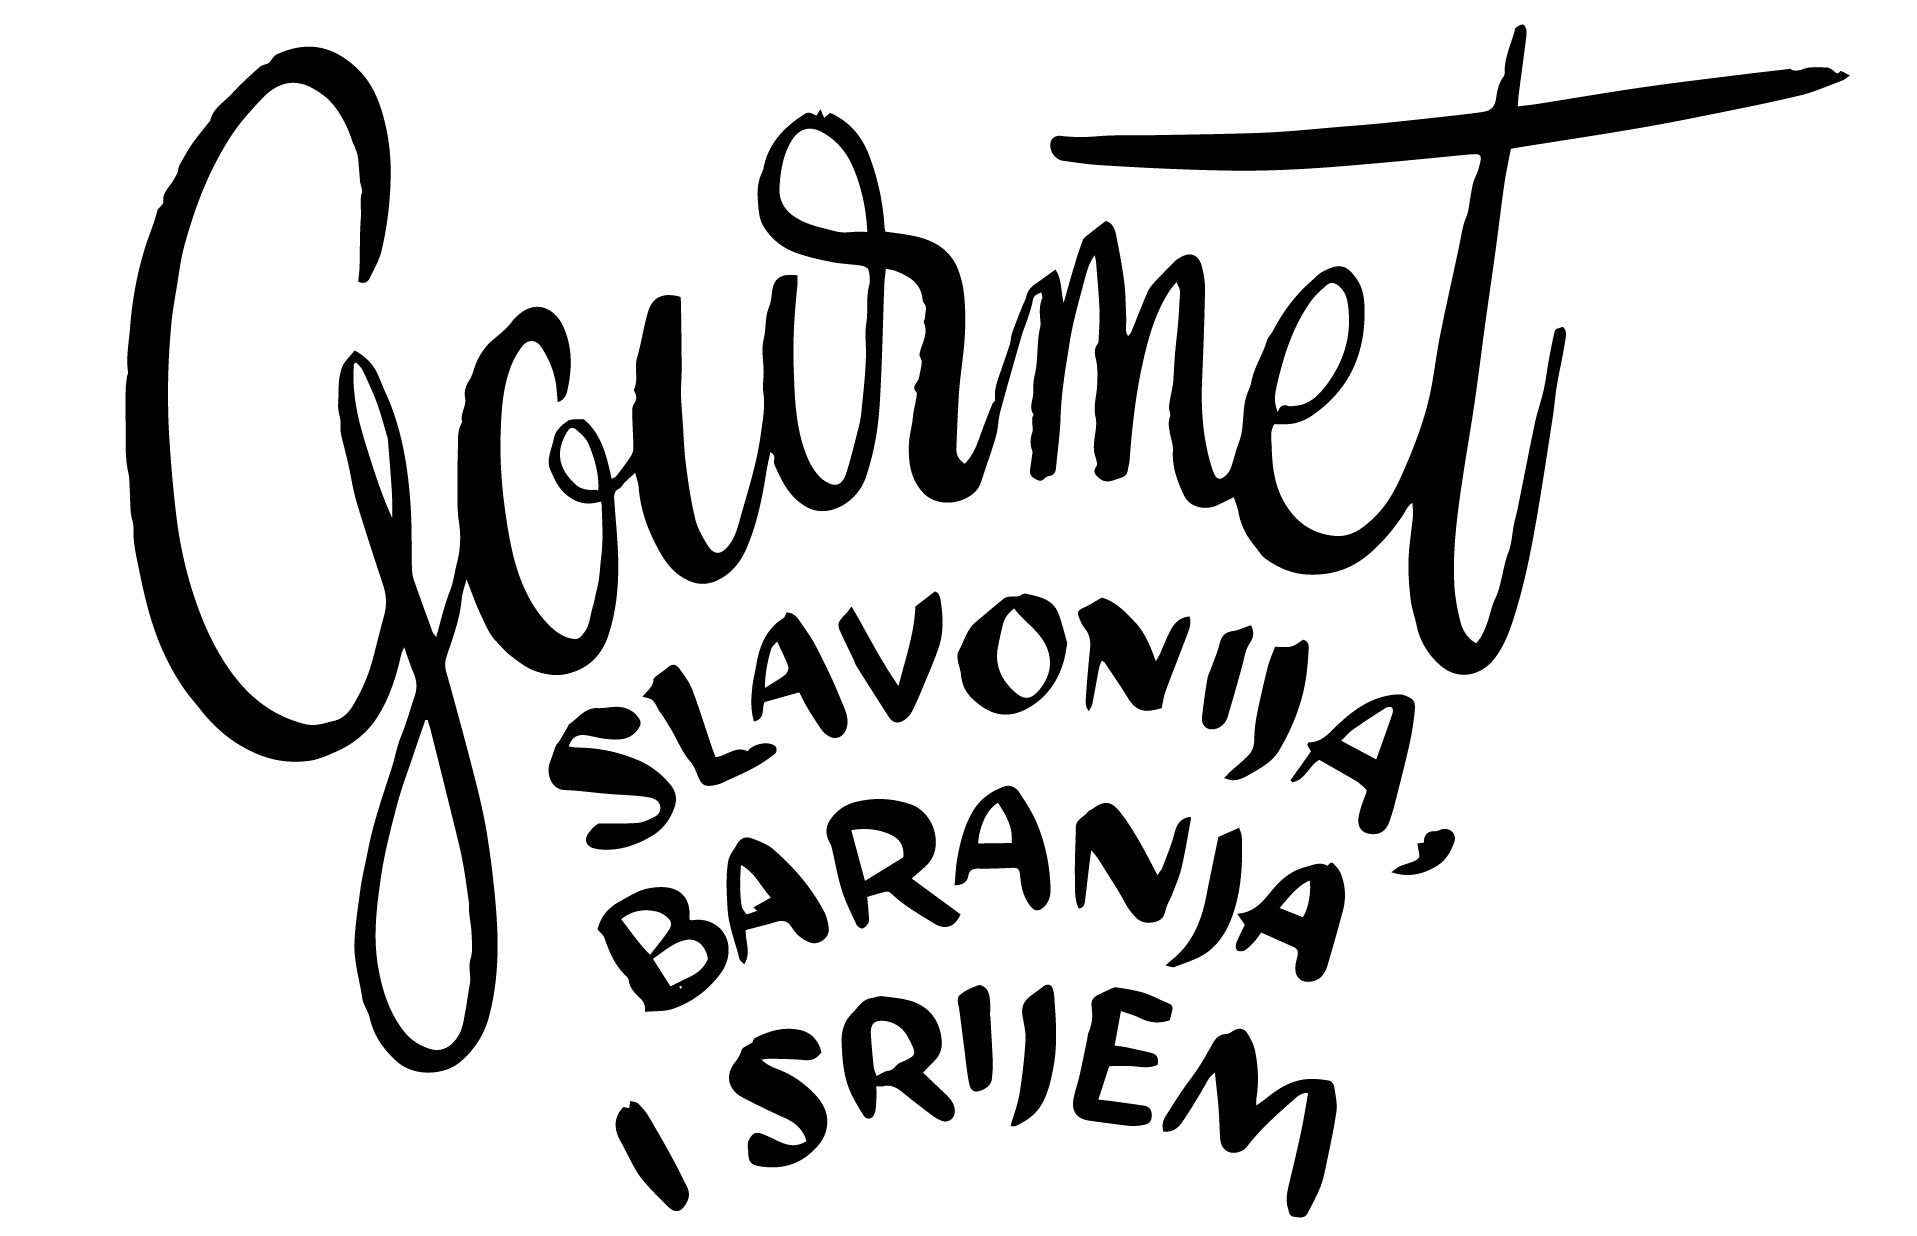 Gourmet priča Slavonije, Baranje i Srijema